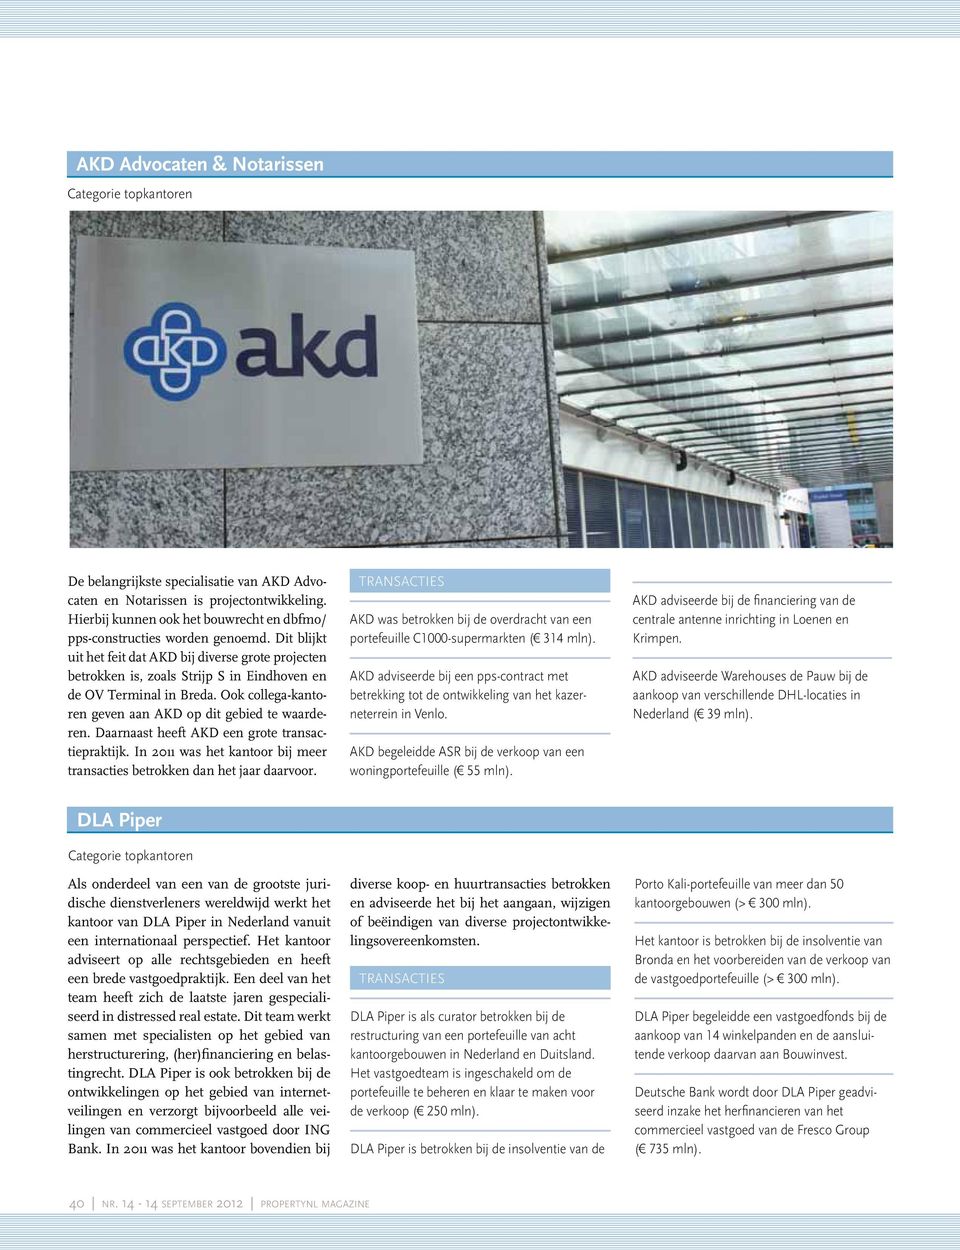 Daarnaast heeft AKD een grote transactiepraktijk. In 2011 was het kantoor bij meer transacties betrokken dan het jaar daarvoor.